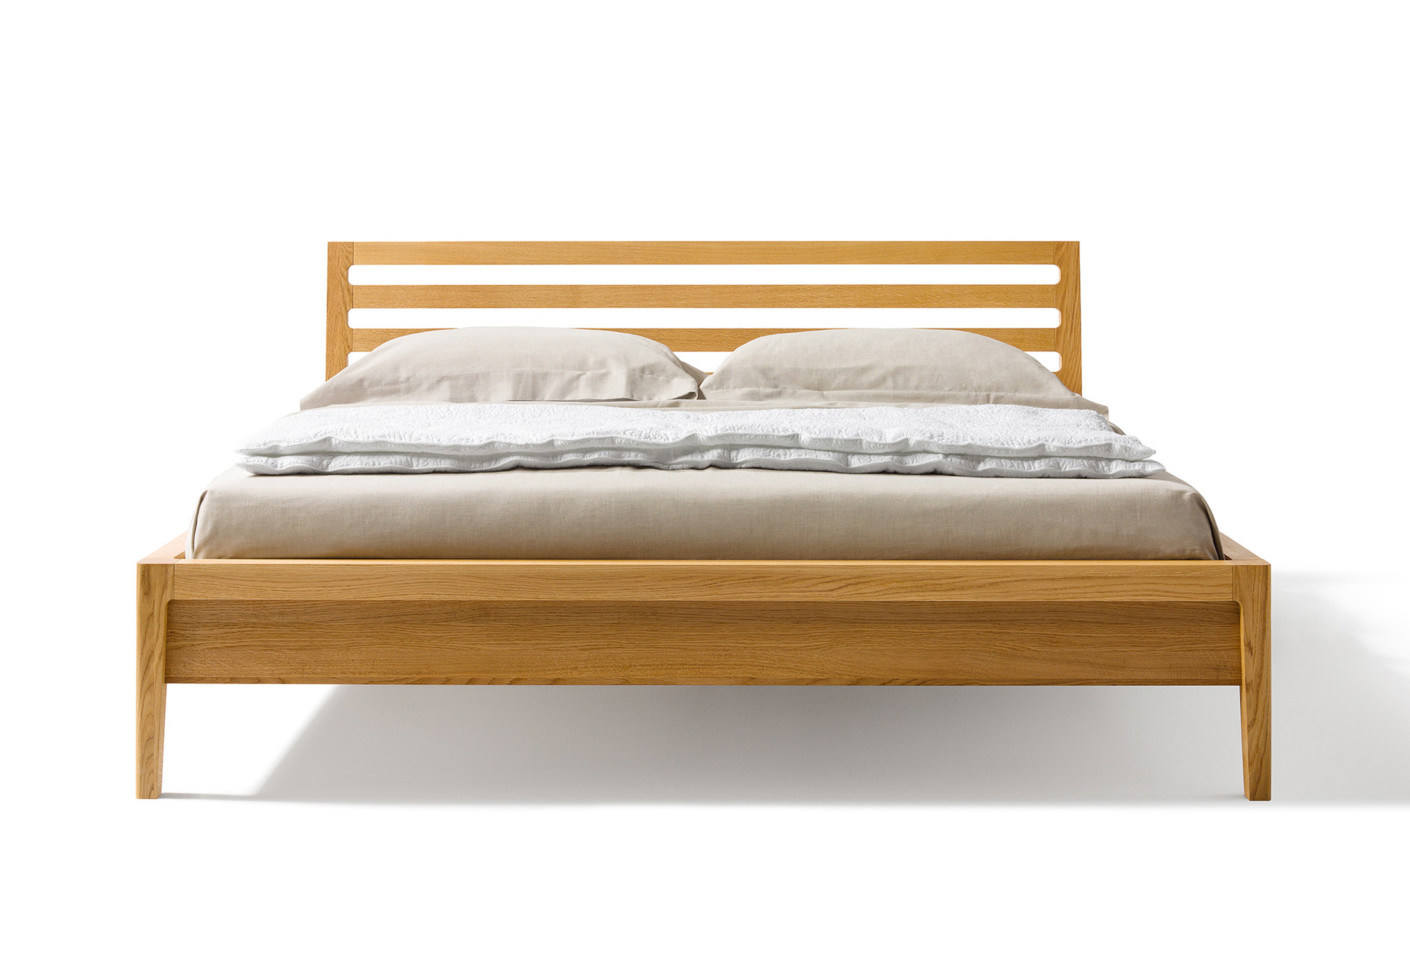 Beds for Sale in Kampala Uganda, Bed Maker, Wood Manufacturer & Carpentry Services, AKD Furniture Company Uganda, Ugabox